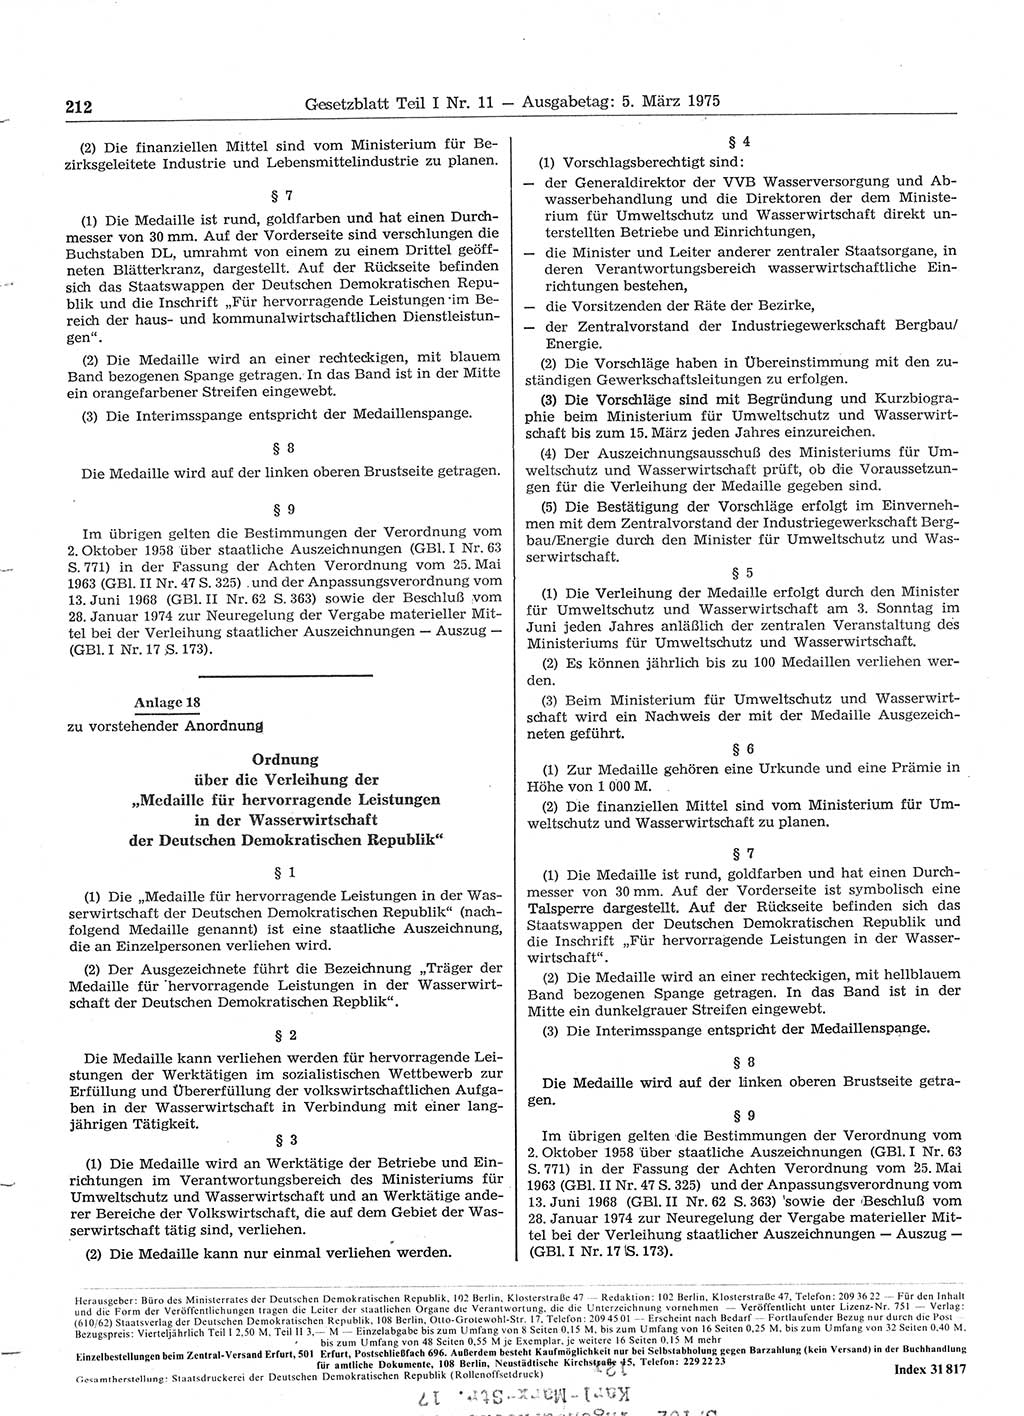 Gesetzblatt (GBl.) der Deutschen Demokratischen Republik (DDR) Teil Ⅰ 1975, Seite 212 (GBl. DDR Ⅰ 1975, S. 212)